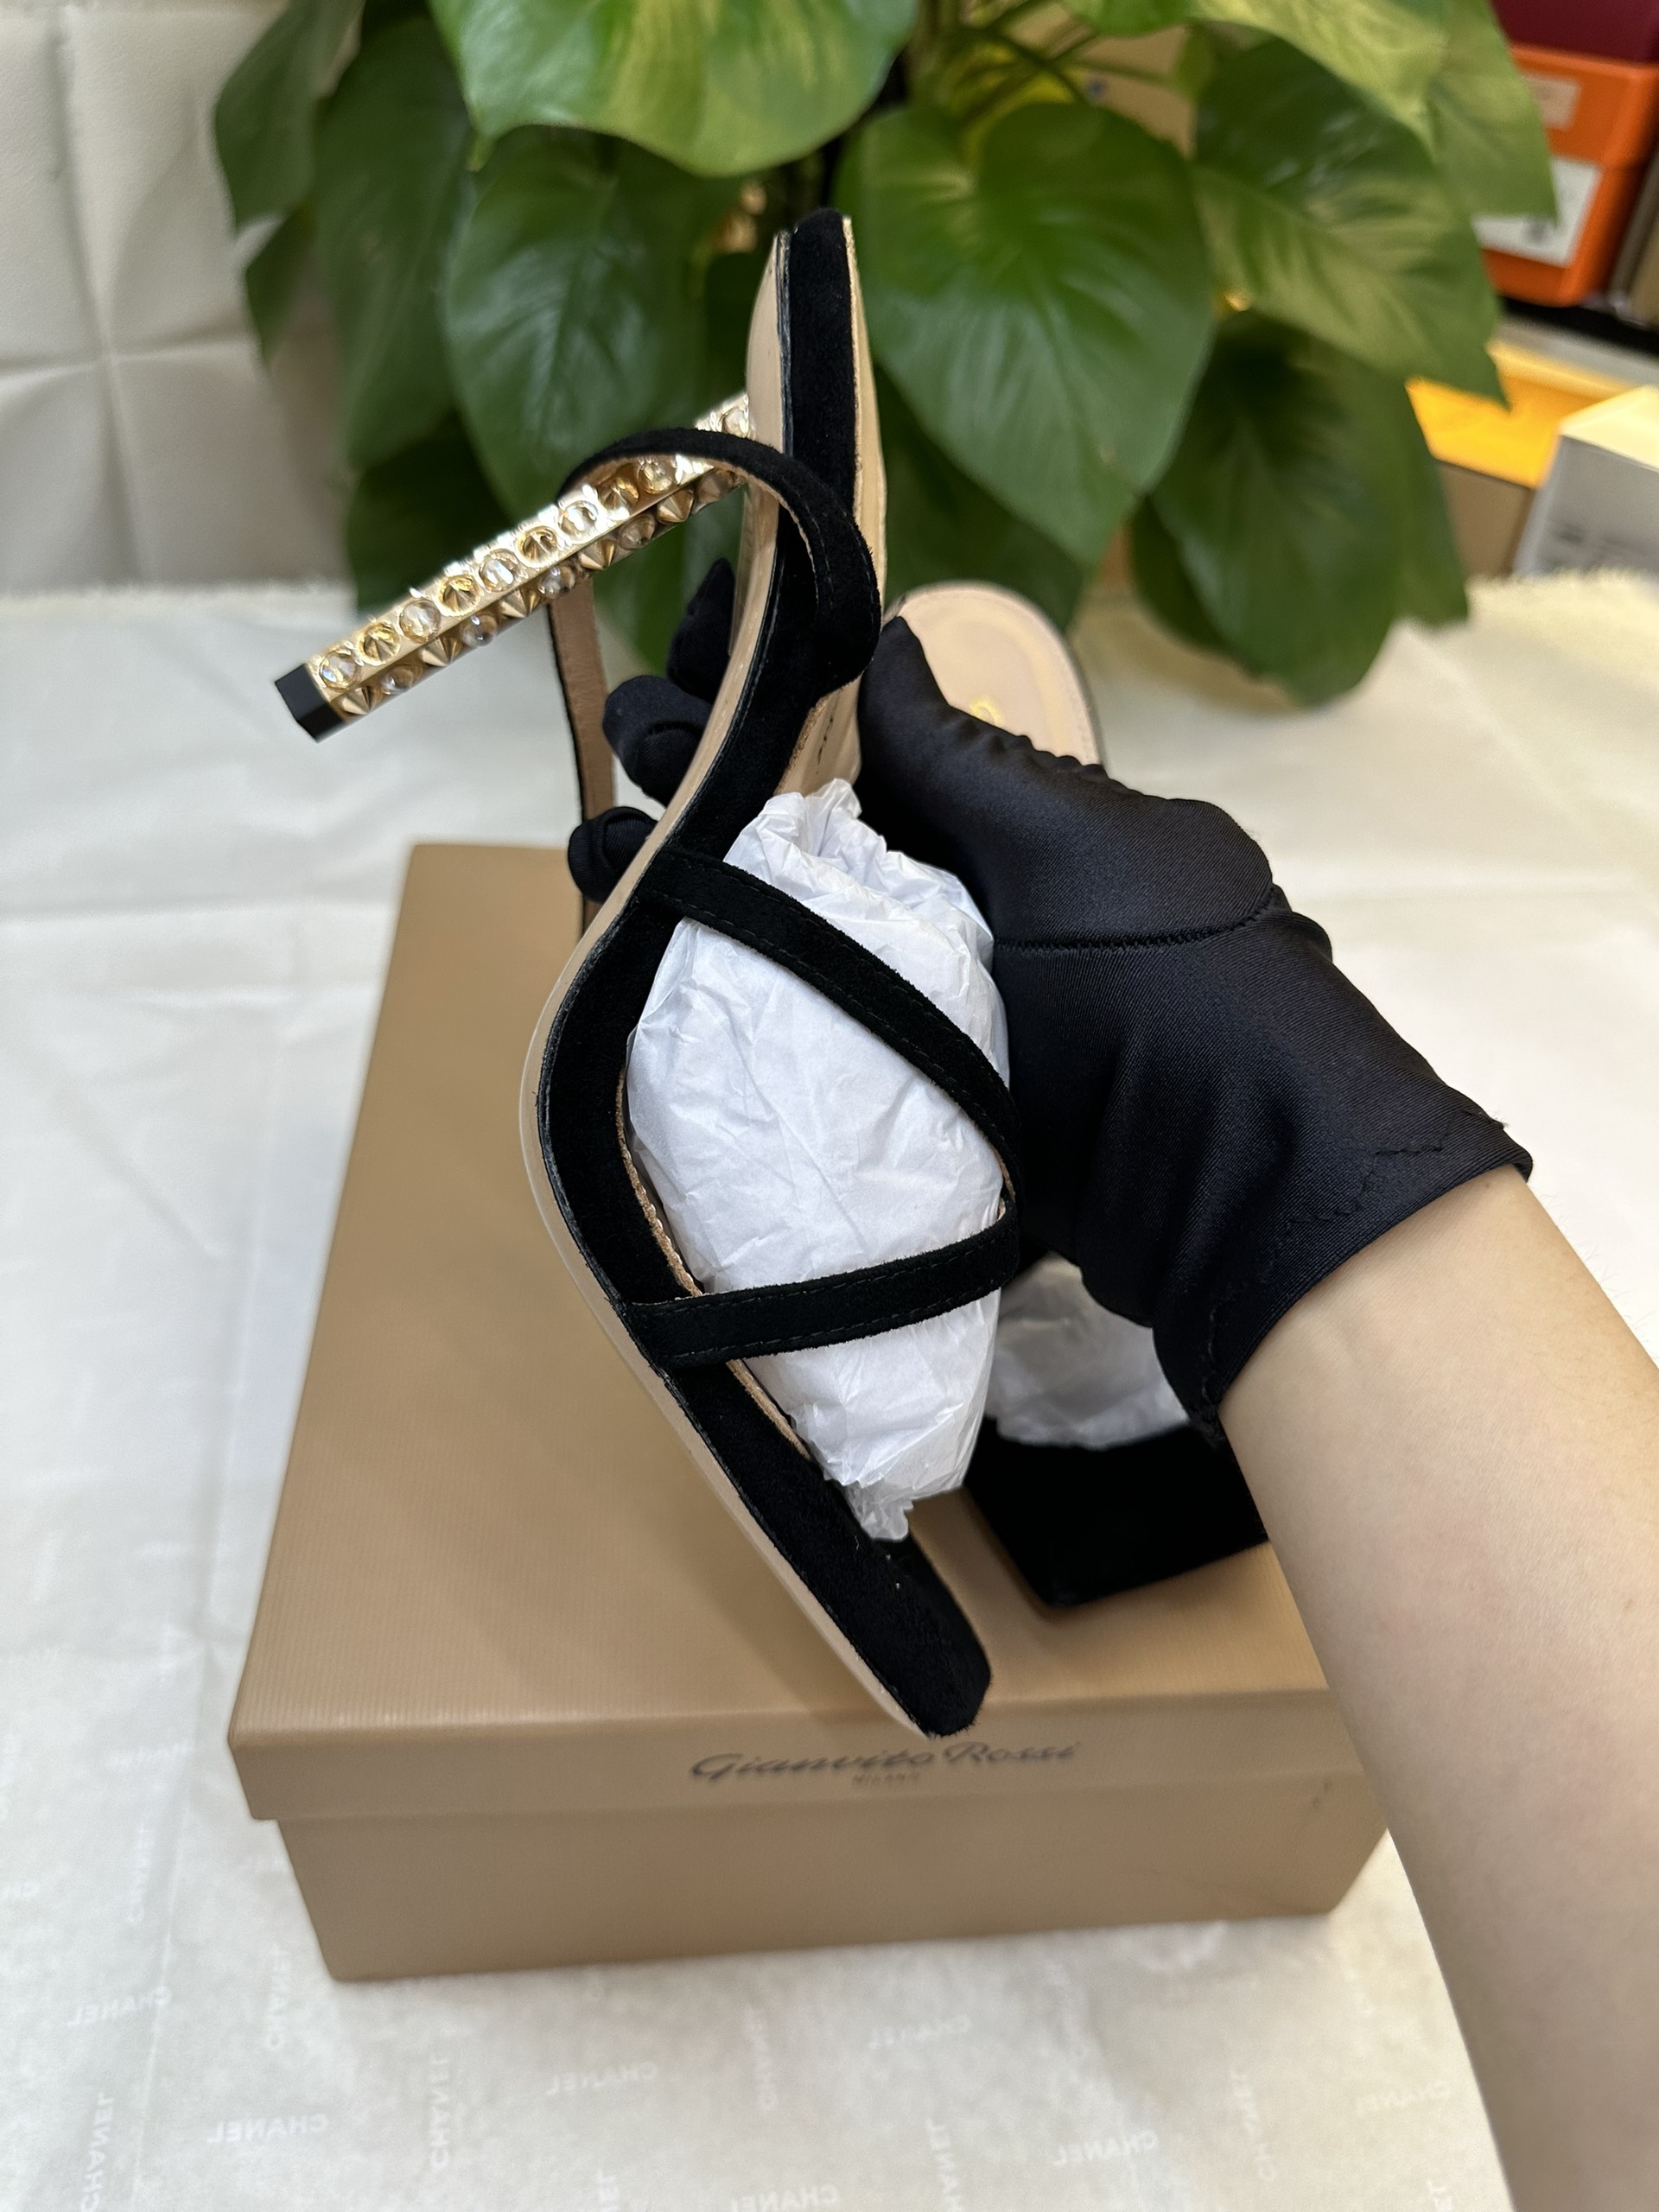 Giày Gianvito Rossi Women Black Wonder Embellished Suede Sandals Siêu Cấp Size 39